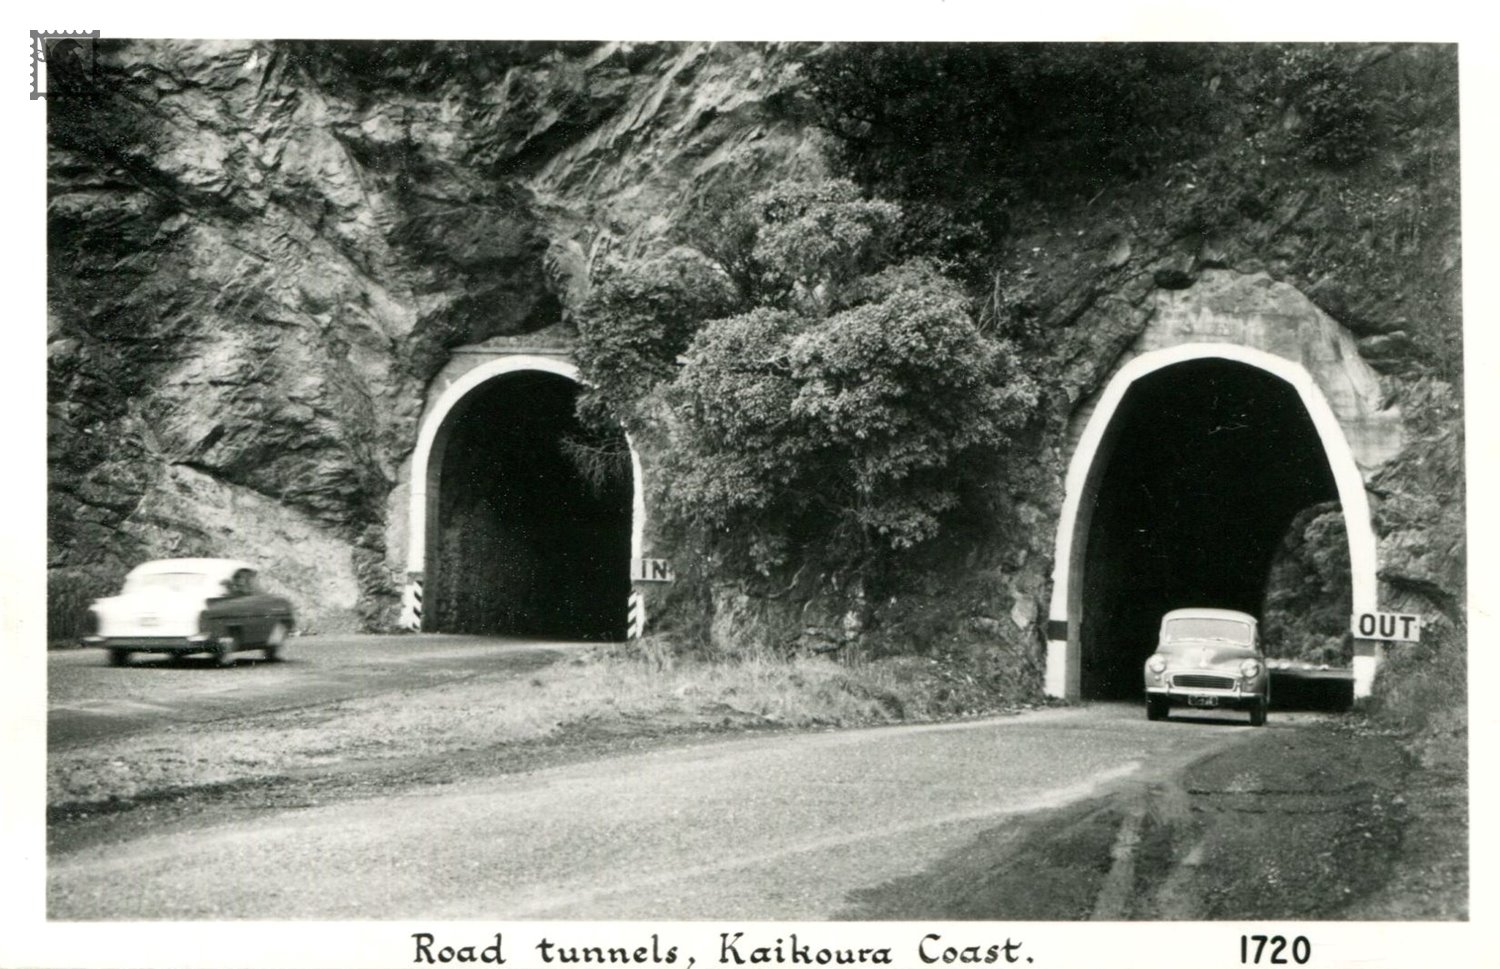 Kaikoura Coast Road Tunnels